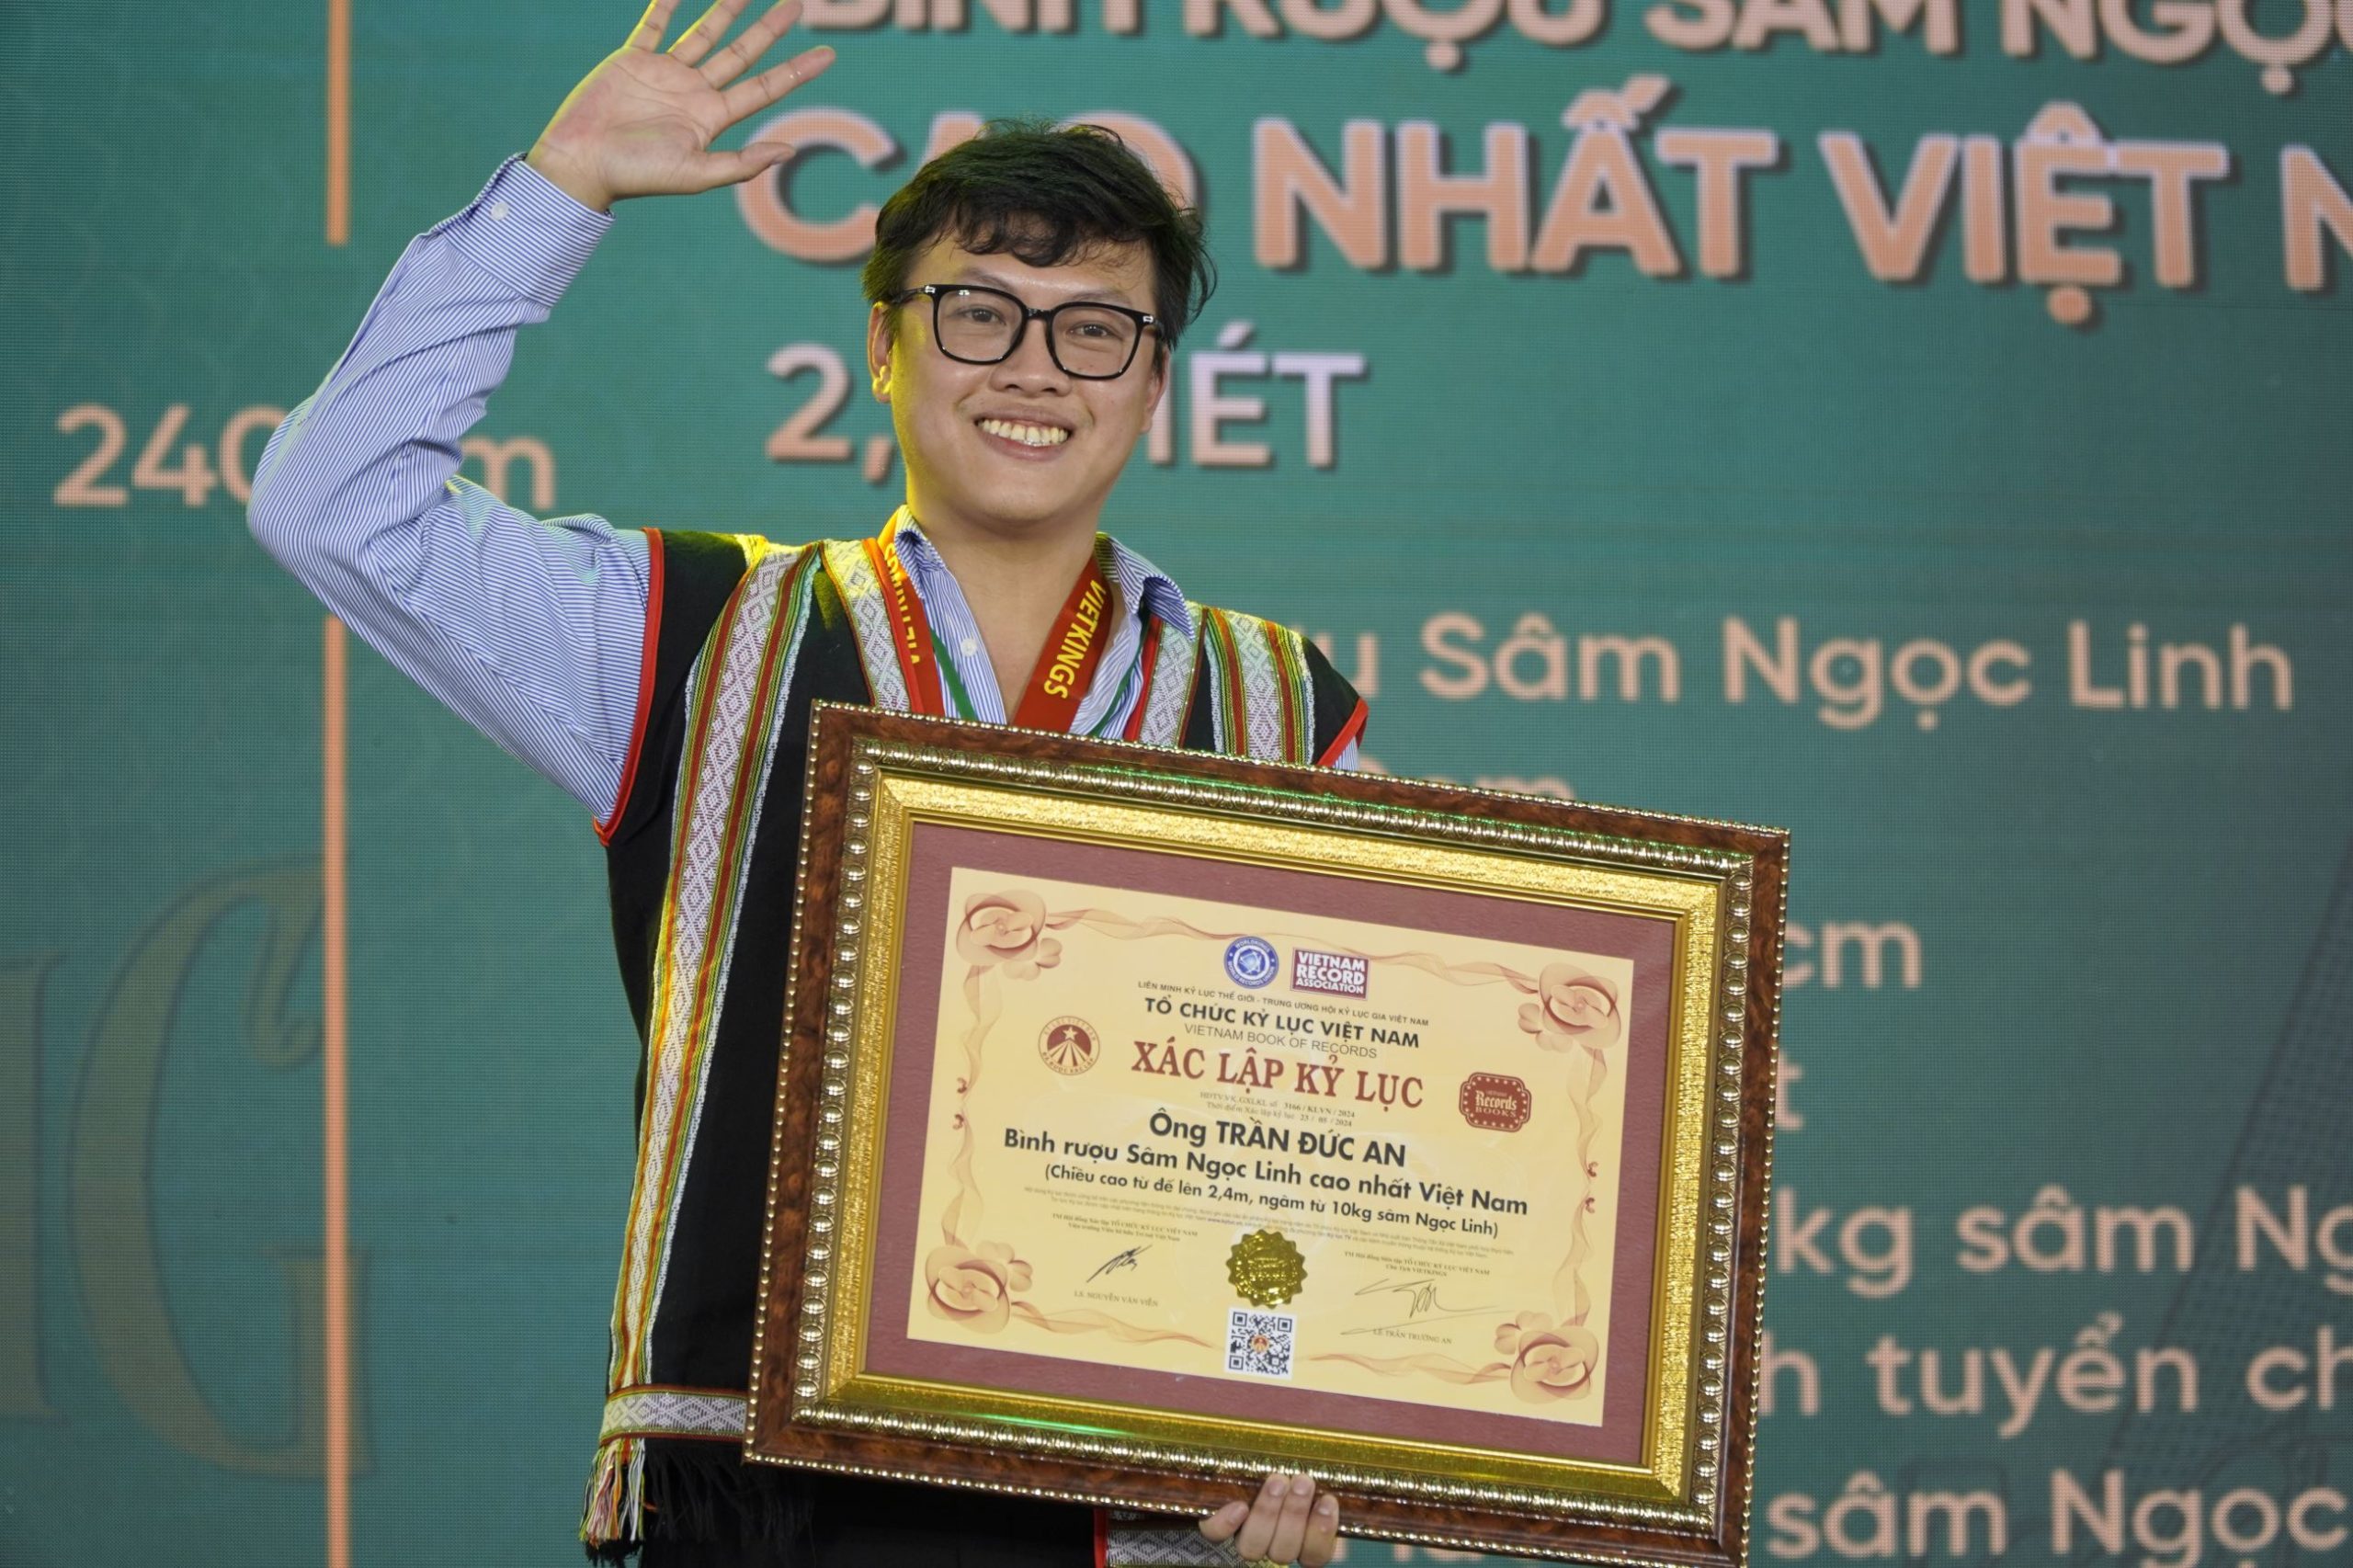 Đây là Kỷ lục Việt Nam thứ 2 trong sự nghiệp nghiên cứu, nuôi trồng và phát triển hình ảnh sâm Ngọc Linh của anh.